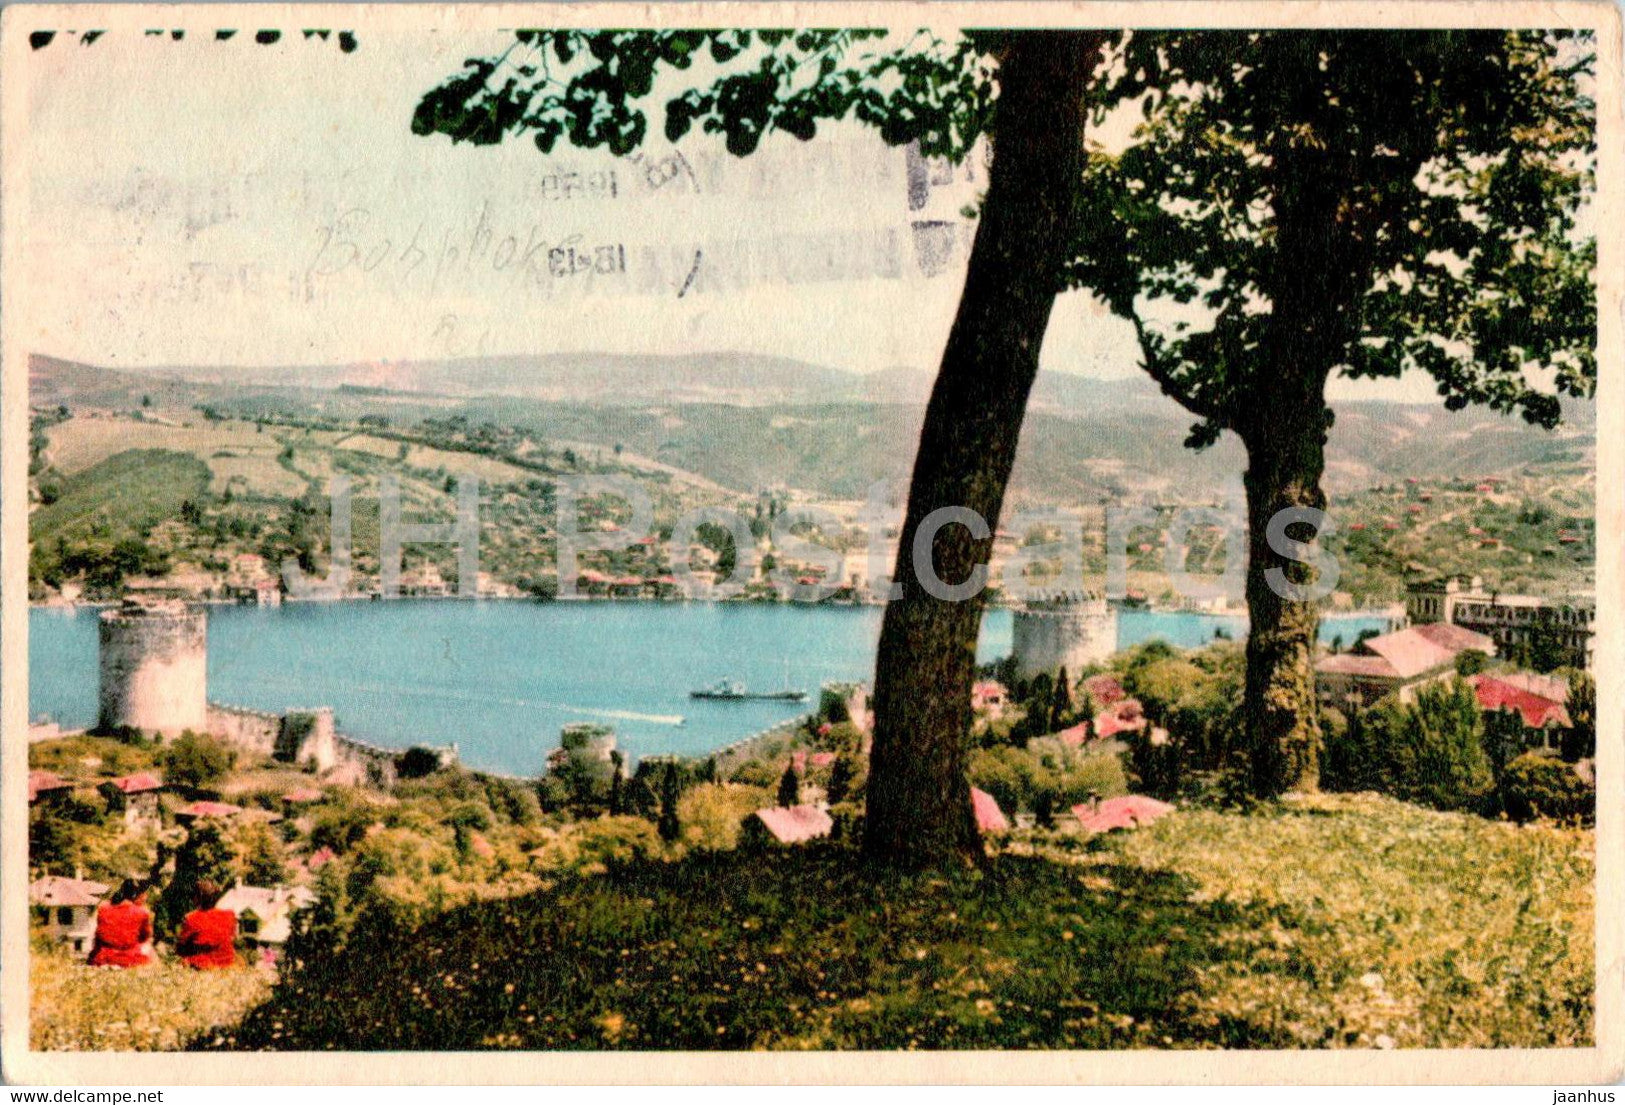 Istanbul - Rumeli Hisar Towers on the Bosphore - old postcard - 1 - 1959 - Turkey - used - JH Postcards